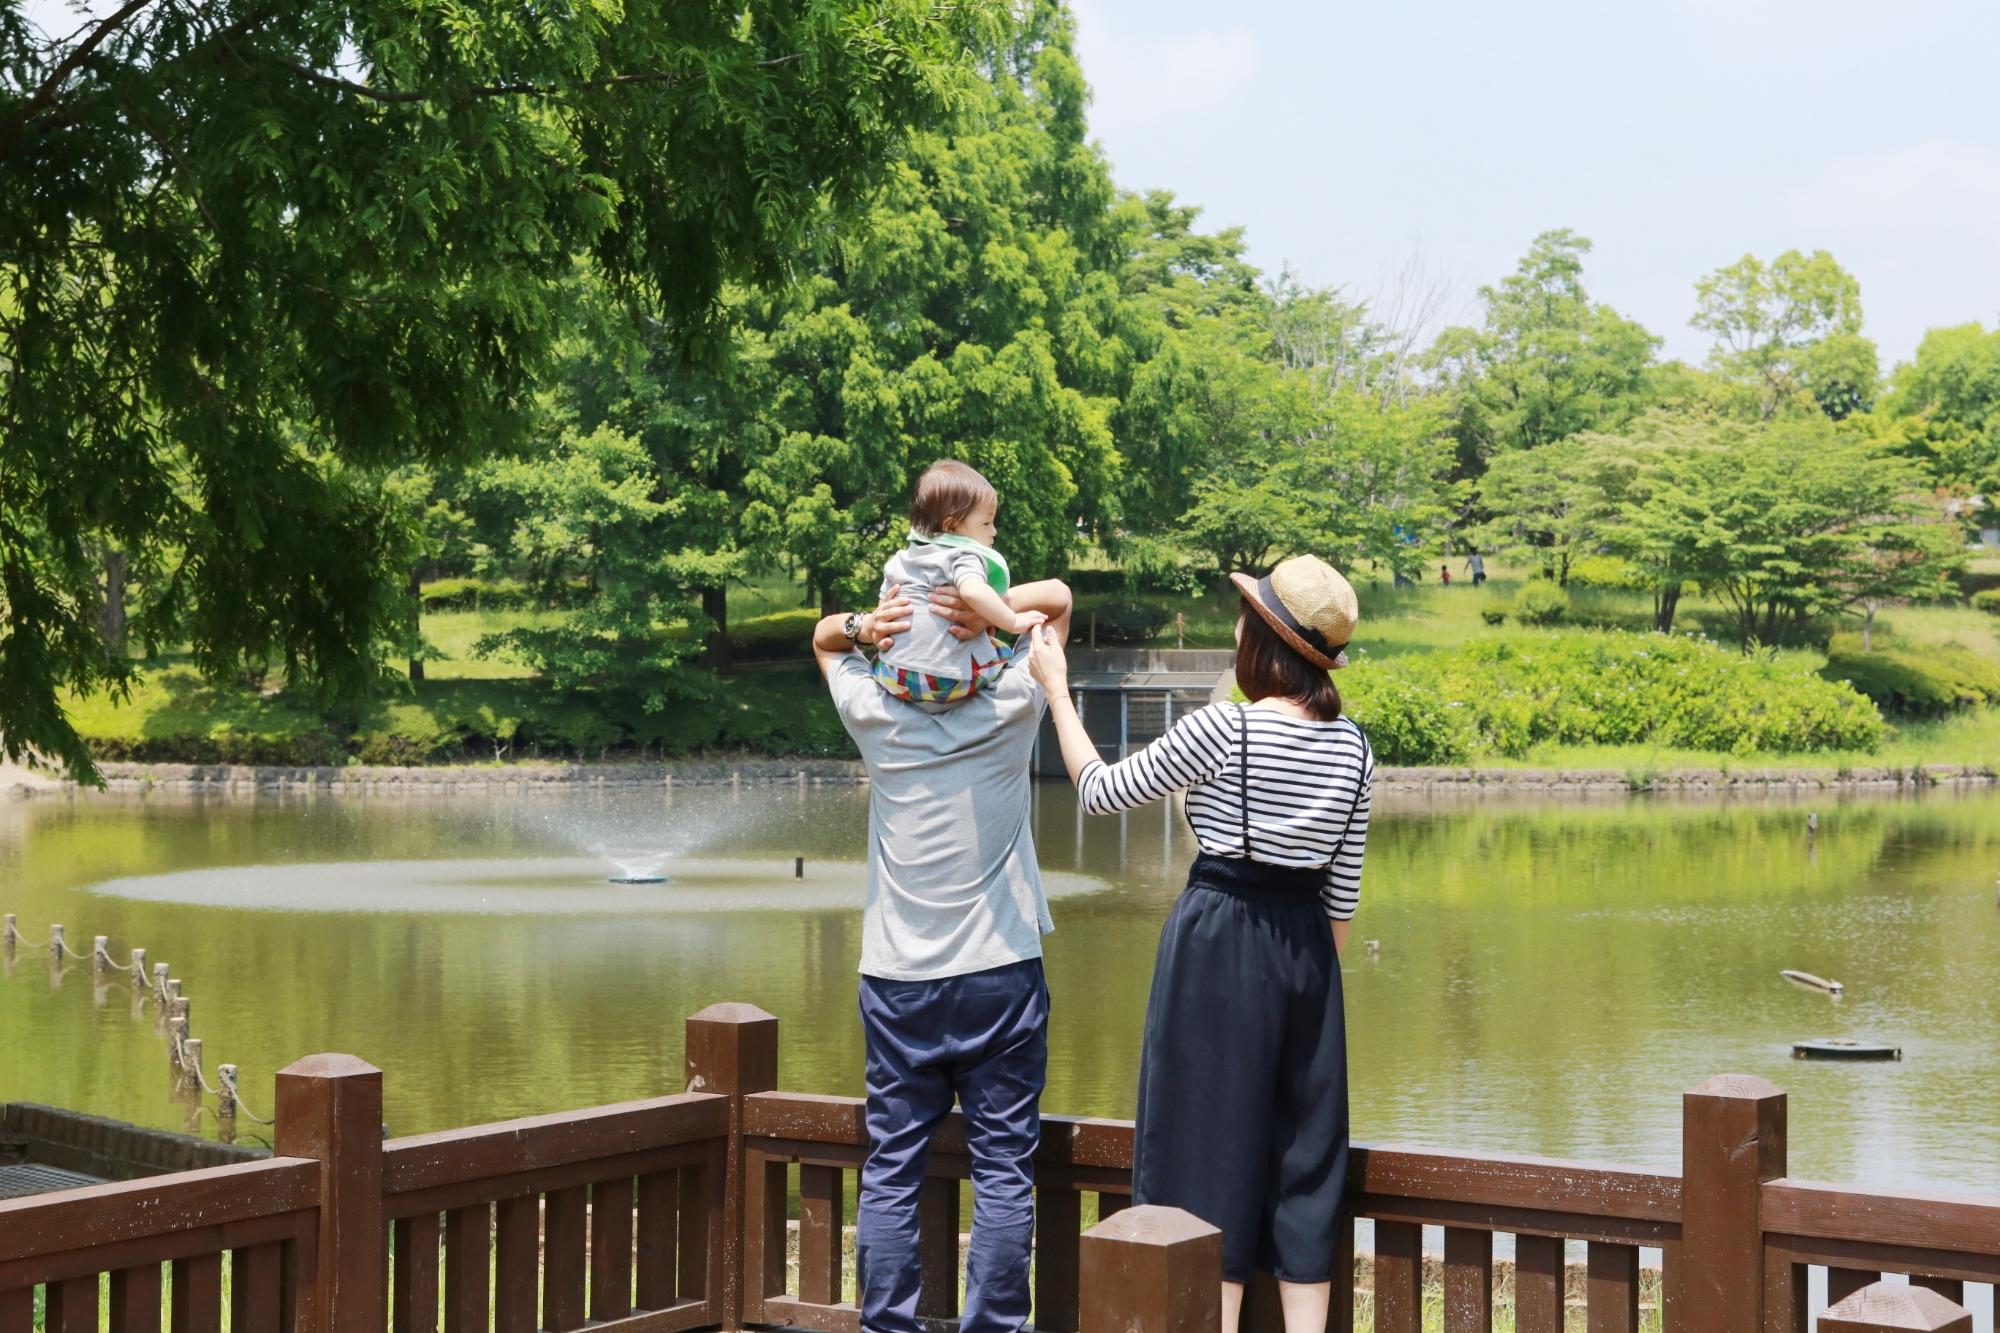 七井戸公園にある大きな池の近くで子供を肩車する父親と、その子供の手を握る母親の写真